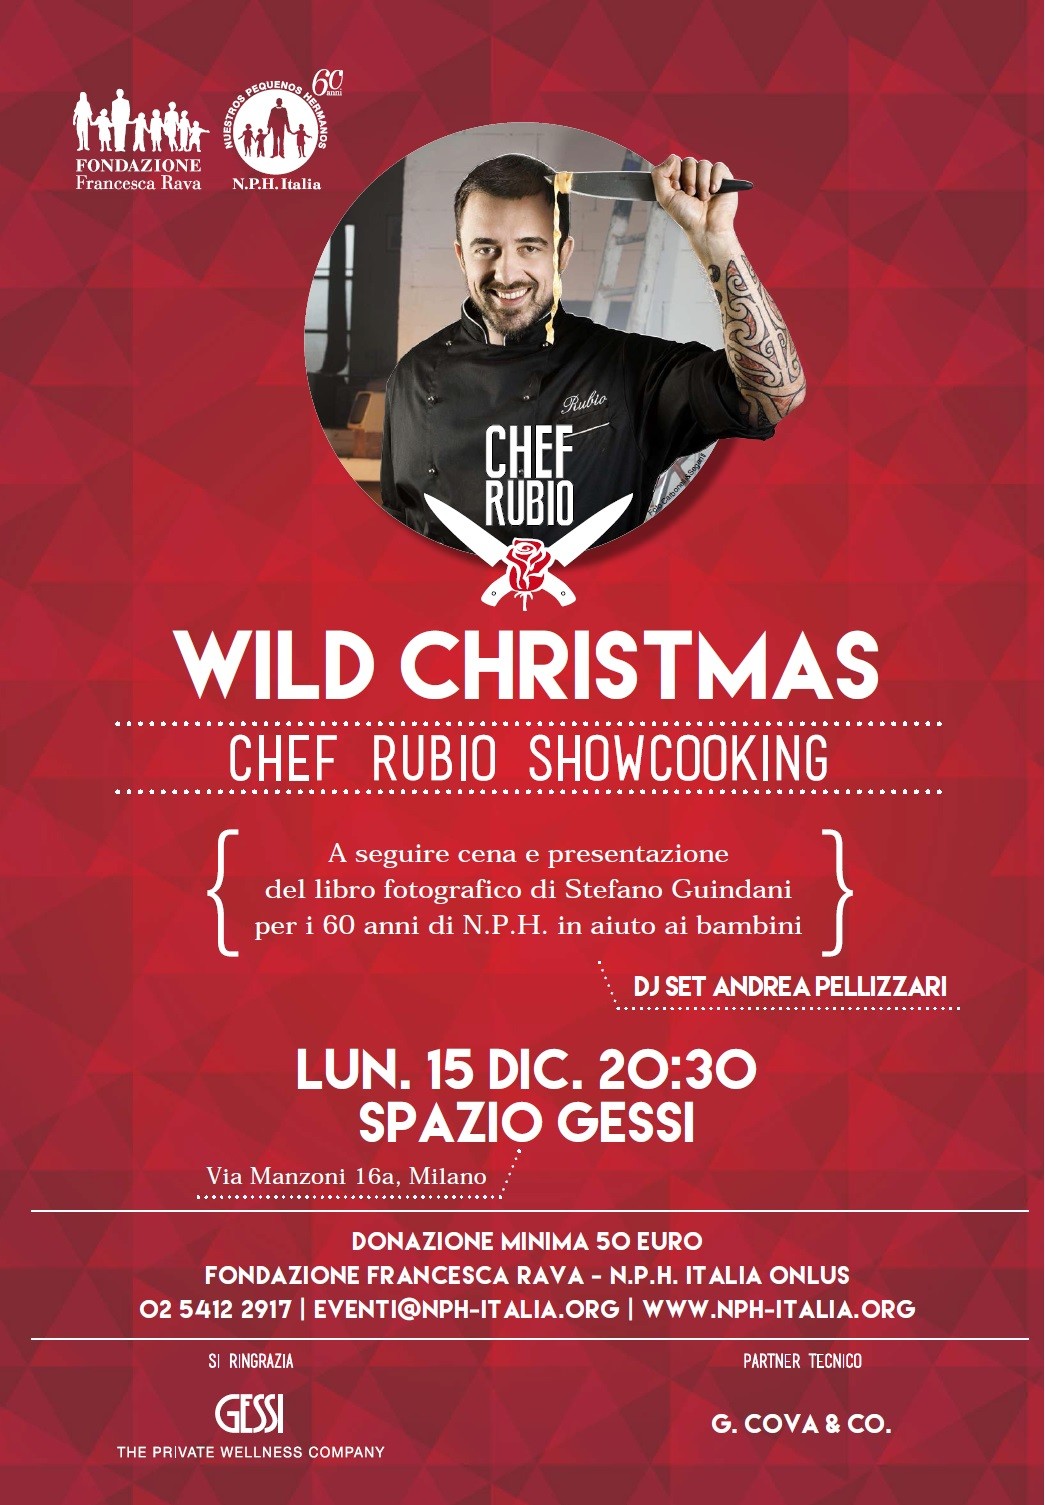 Lunedì 15 dicembre, 20.30, WILD CHRISTMAS, una frizzante serata di Natale con Chef Rubio e djset di Andrea Pellizzari.